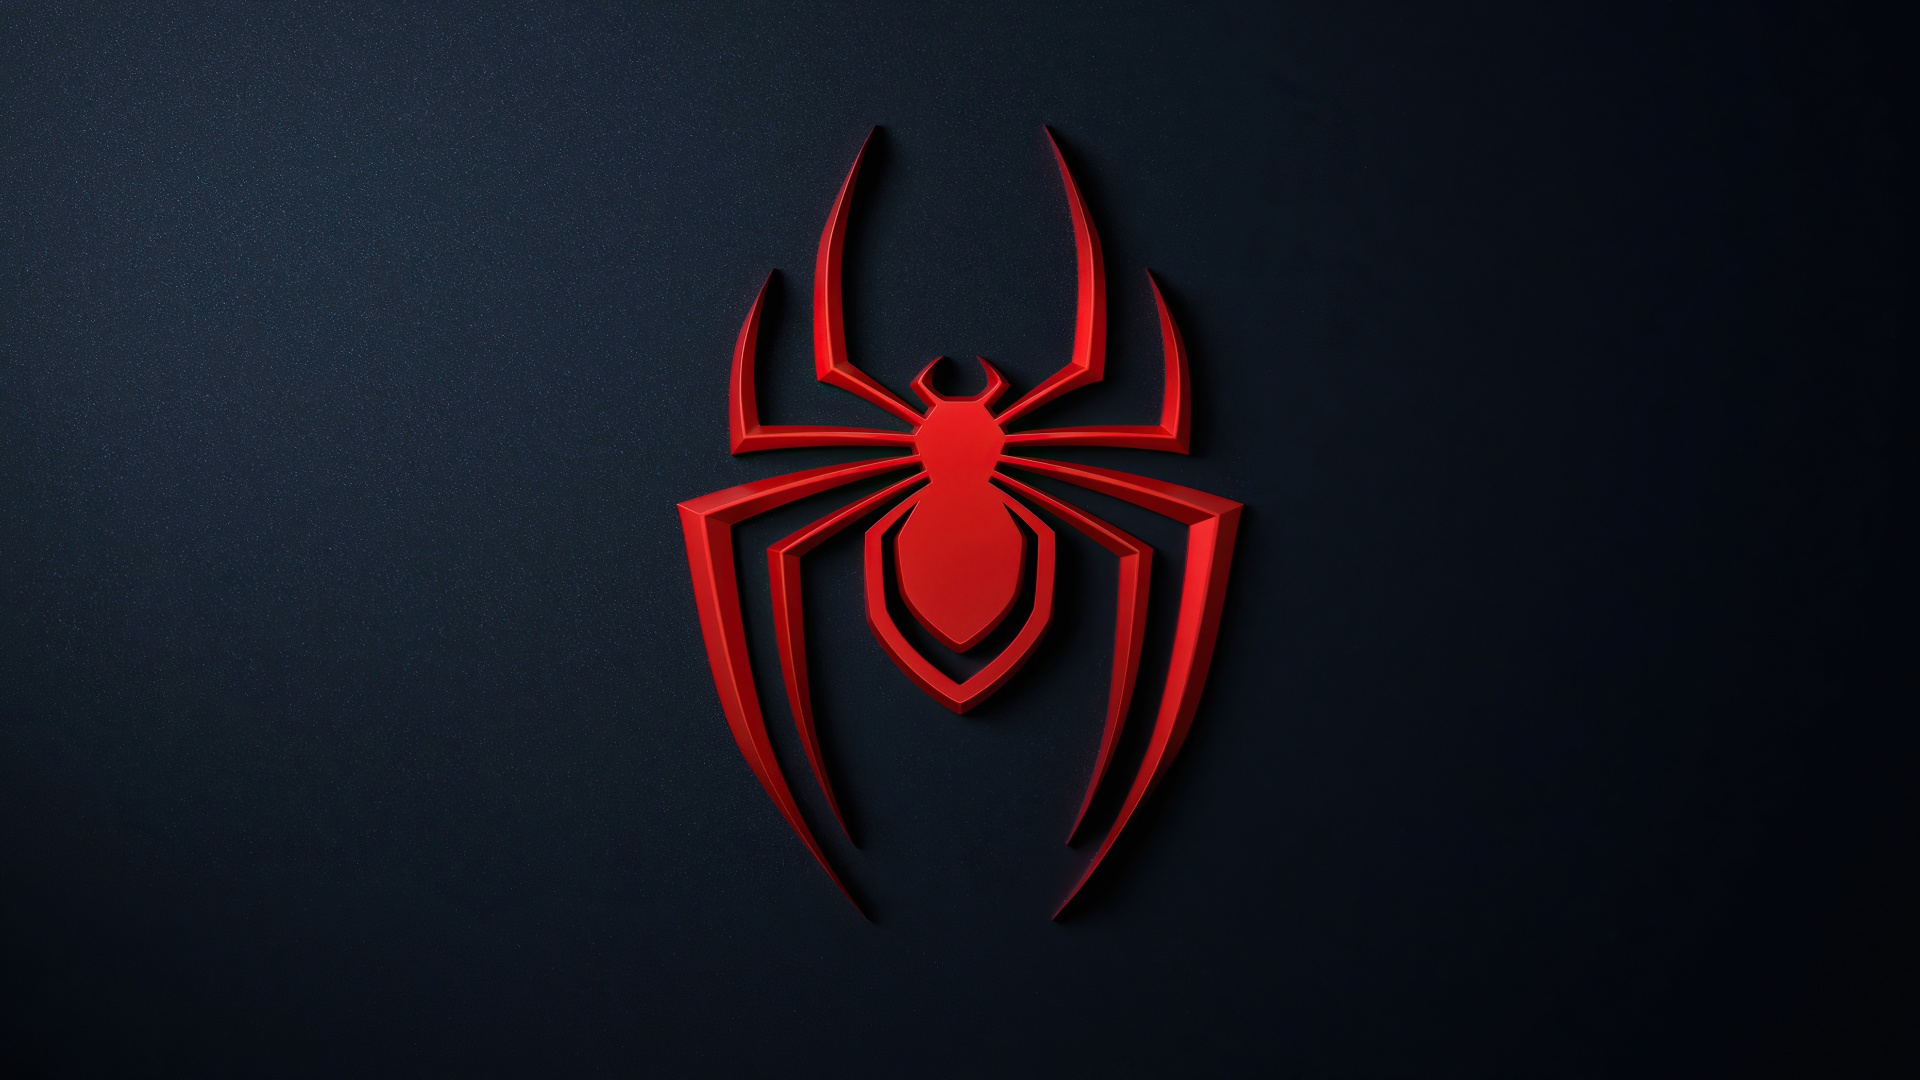 Cùng đắm mình vào thế giới siêu anh hùng với Spider-Man: Miles Morales Wallpaper 4K. Hình nền với chất lượng 4K sắc nét sẽ mang đến những trải nghiệm thú vị và đặc biệt cho các fan của người nhện. Hãy cùng khám phá những chi tiết tuyệt vời trong hình nền này và trở thành người hâm mộ đích thực của Spider-Man.